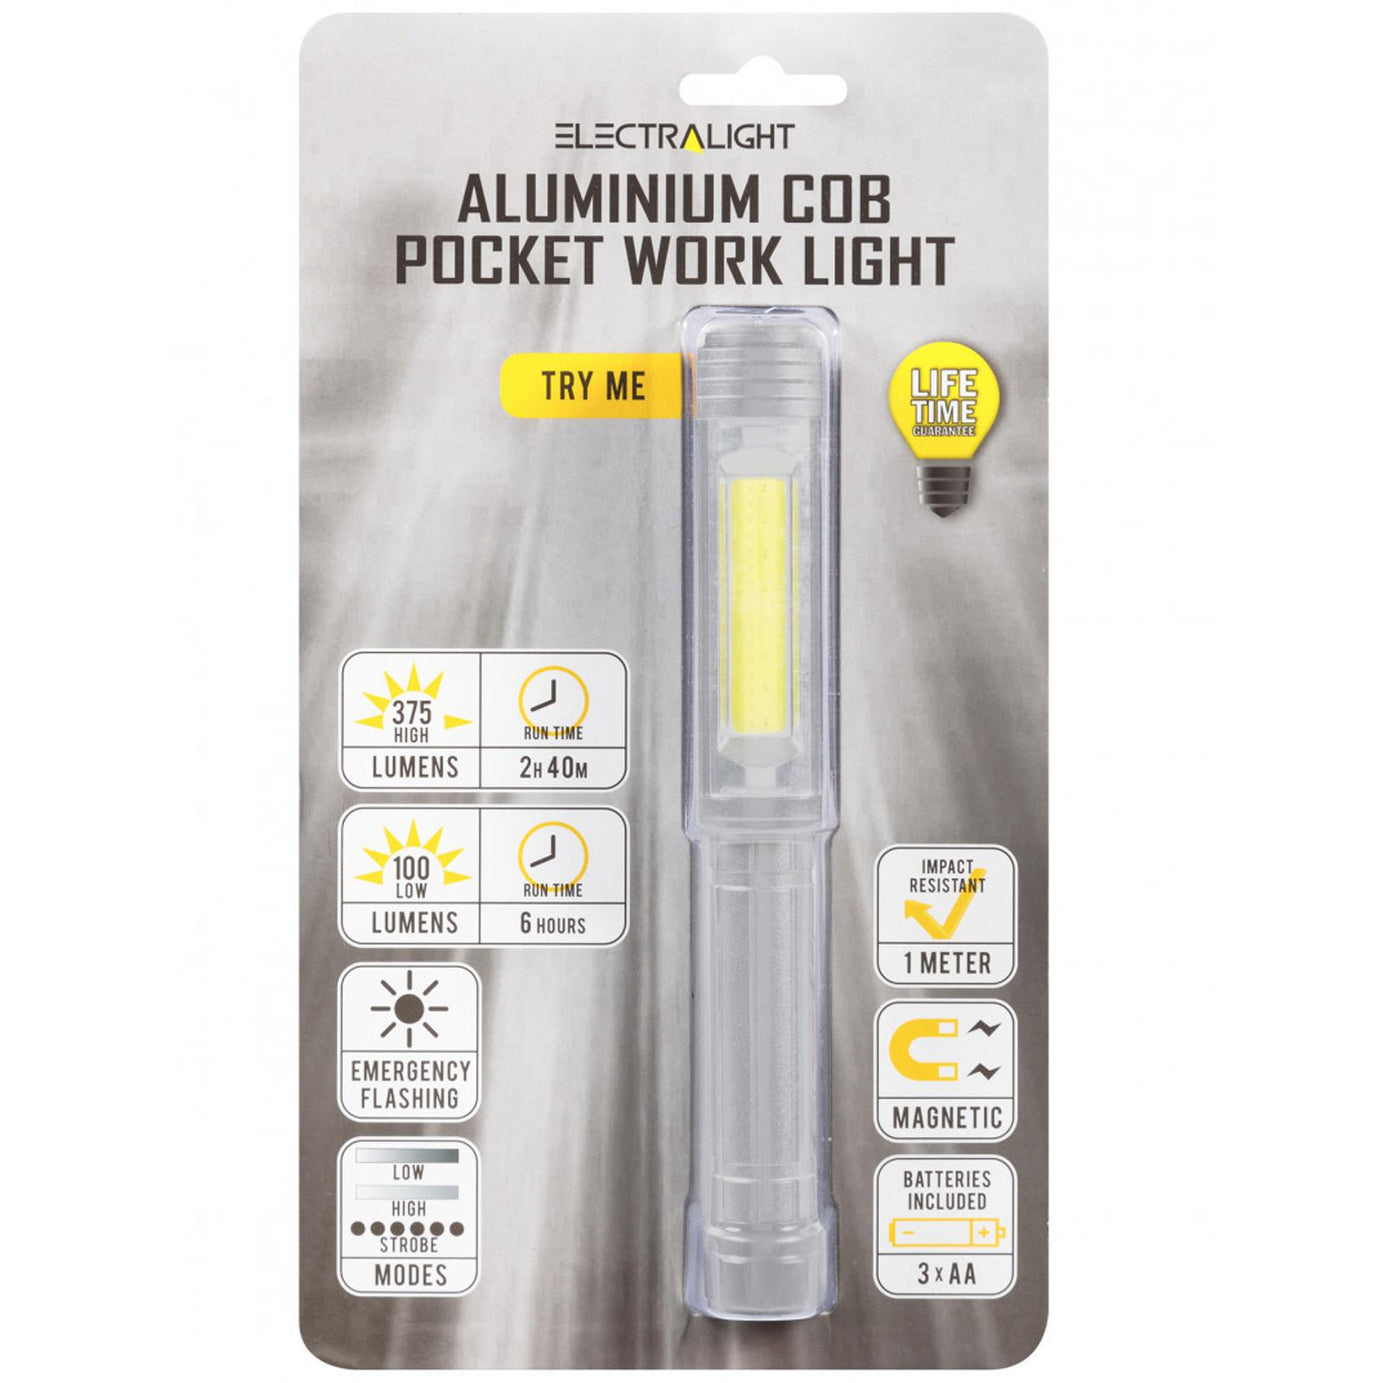 BlueSpot Electralight Aluminium COB Pocket Work Light (375/150 Lumens) Pocket Clip Magnet